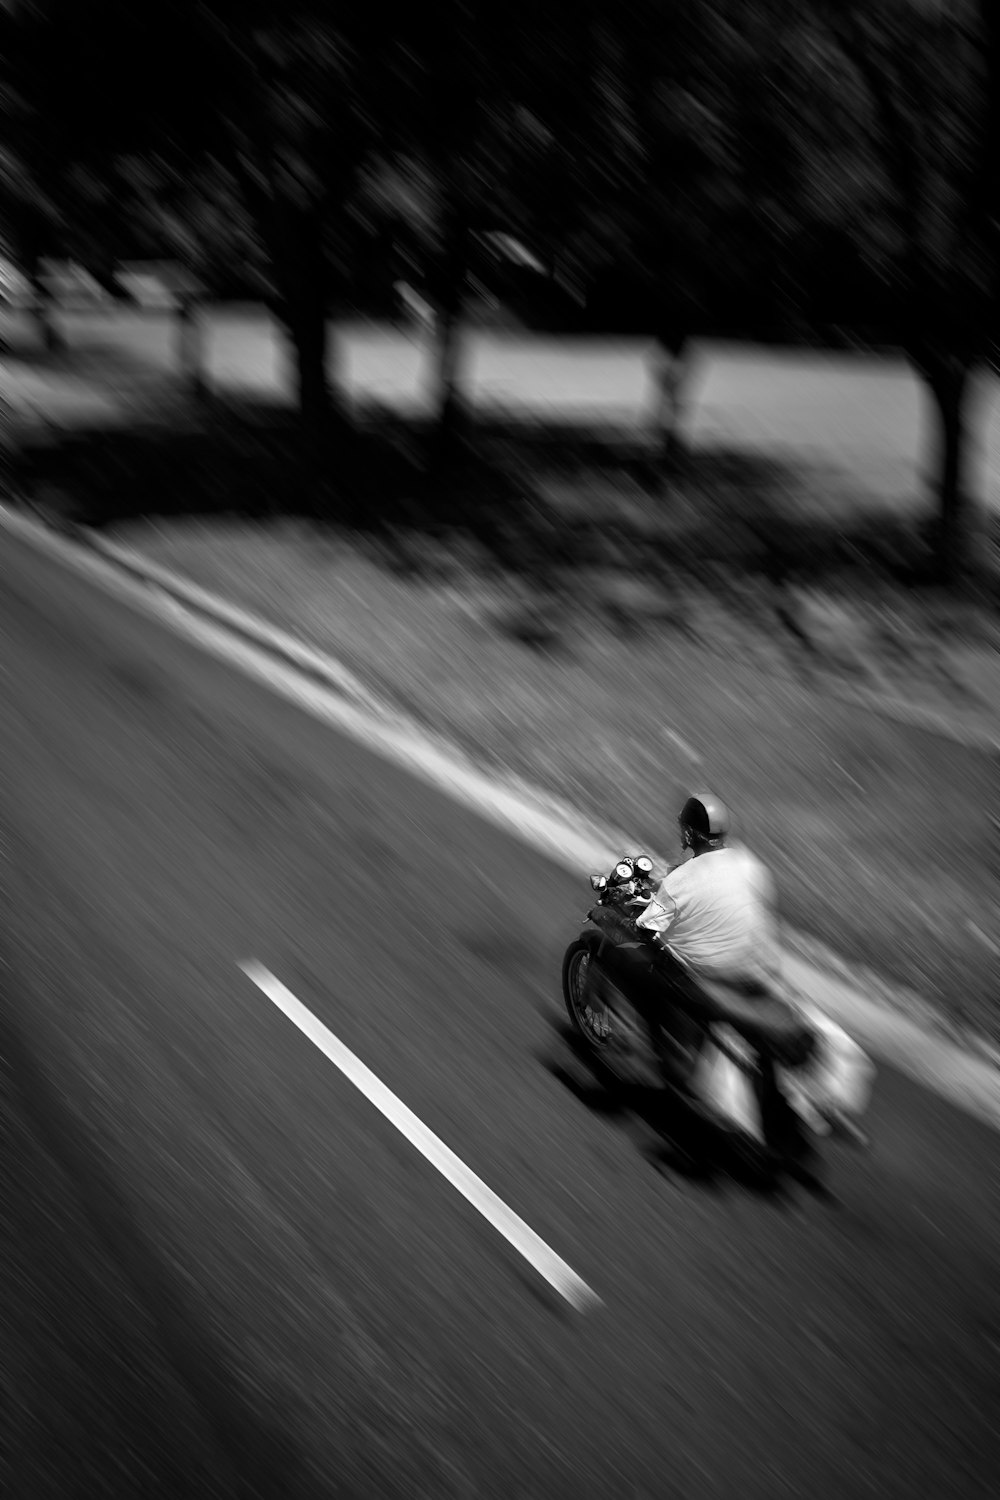 panning photo of man riding motorcycle